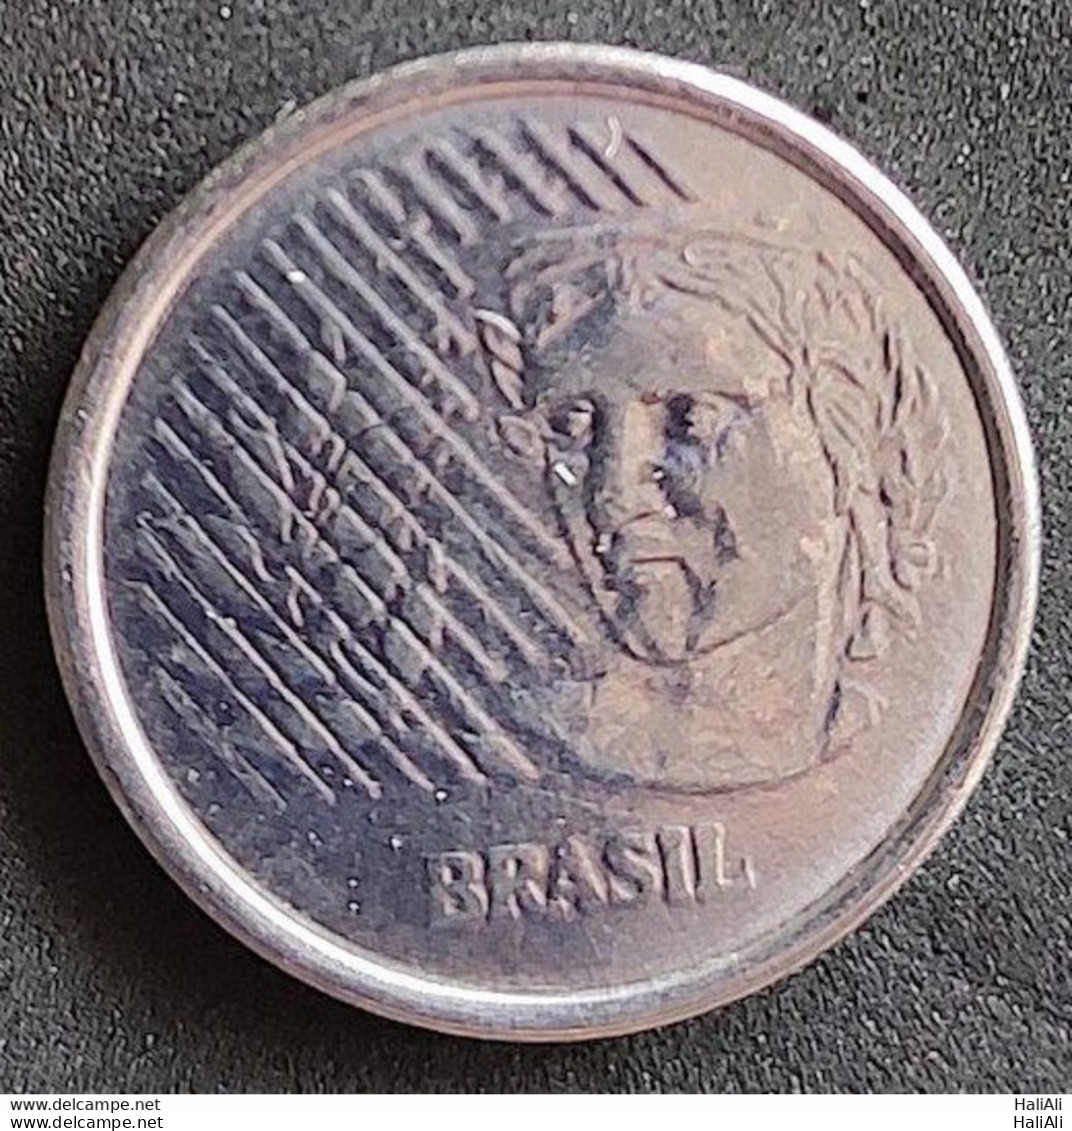 Coin Brazil Moeda Brasil 1996 1 Centavo 1 - Brazil